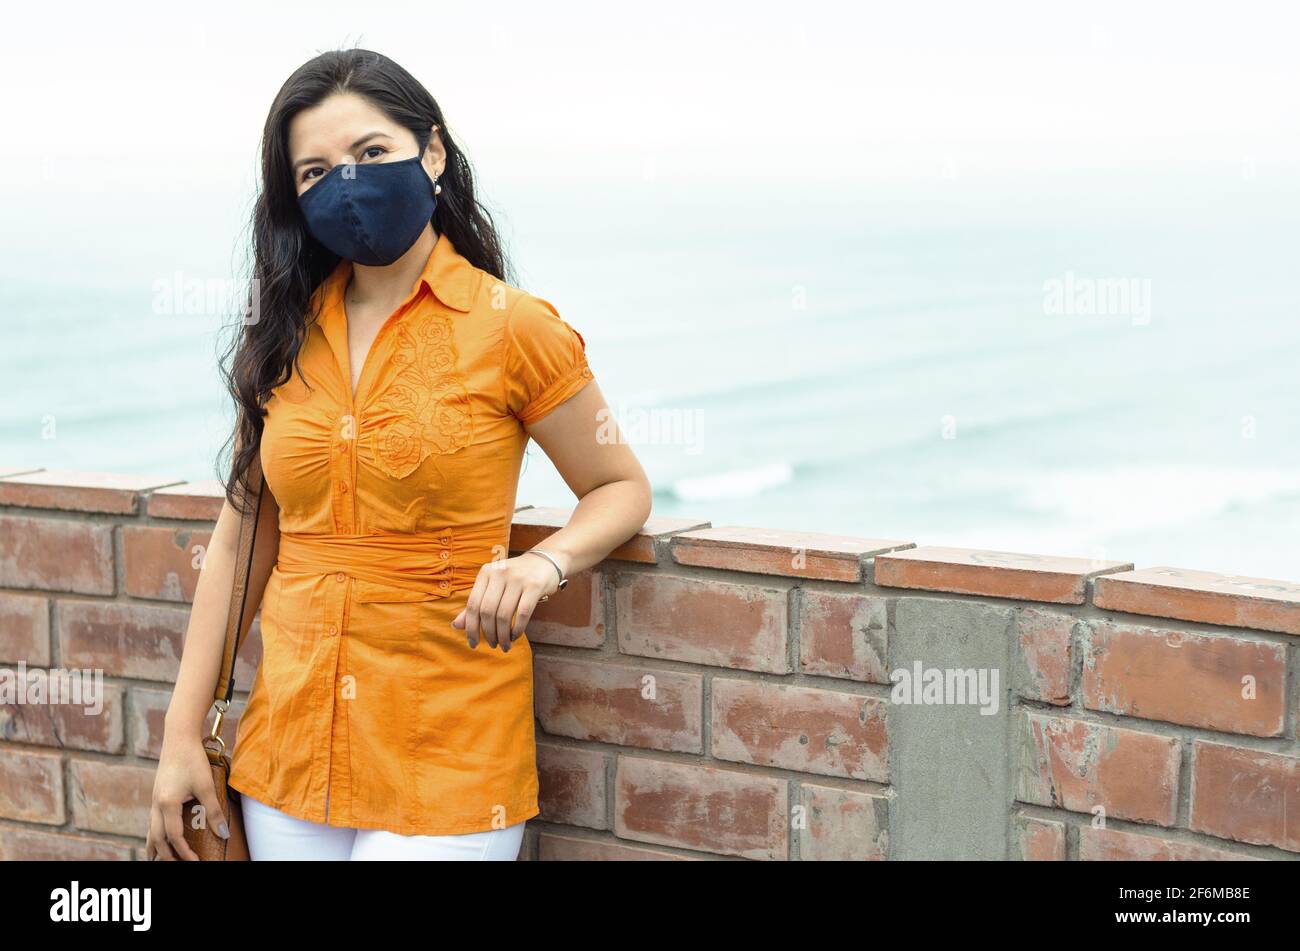 COVID-19 Pandemische Coronavirus-Frau in der Stadt Straße trägt Maske Schutz für die Ausbreitung des Krankheitsvirus SARS-CoV-2. Stockfoto